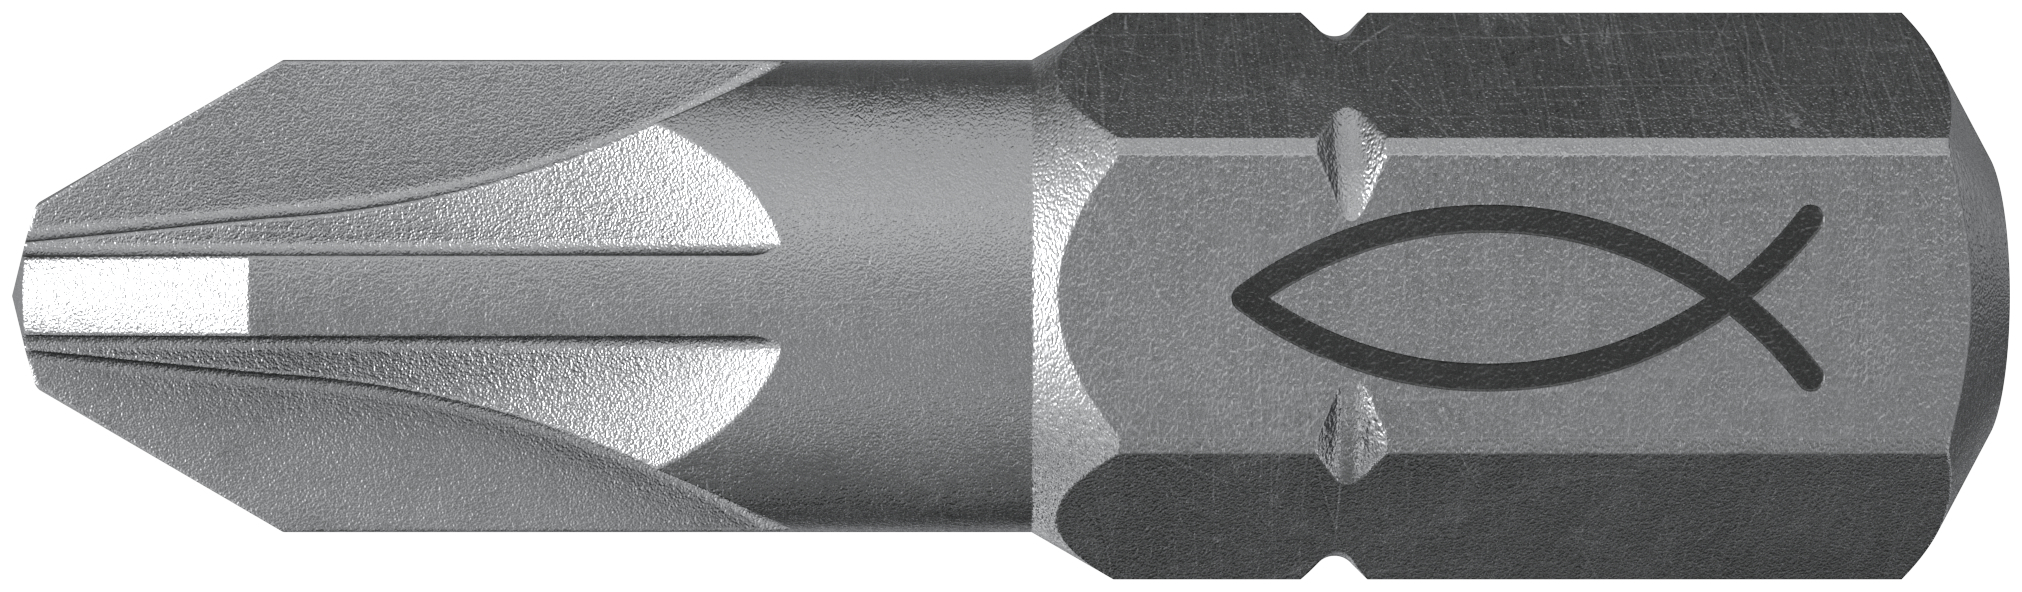 fischer Inserto per avvitatore FPB PZ 1 PROFI Bit W 10 (10 Pz.) L'inserto per trapano e avvitatore, in acciaio di alta qualit con elevata resistenza all?abrasione per uso professionale.